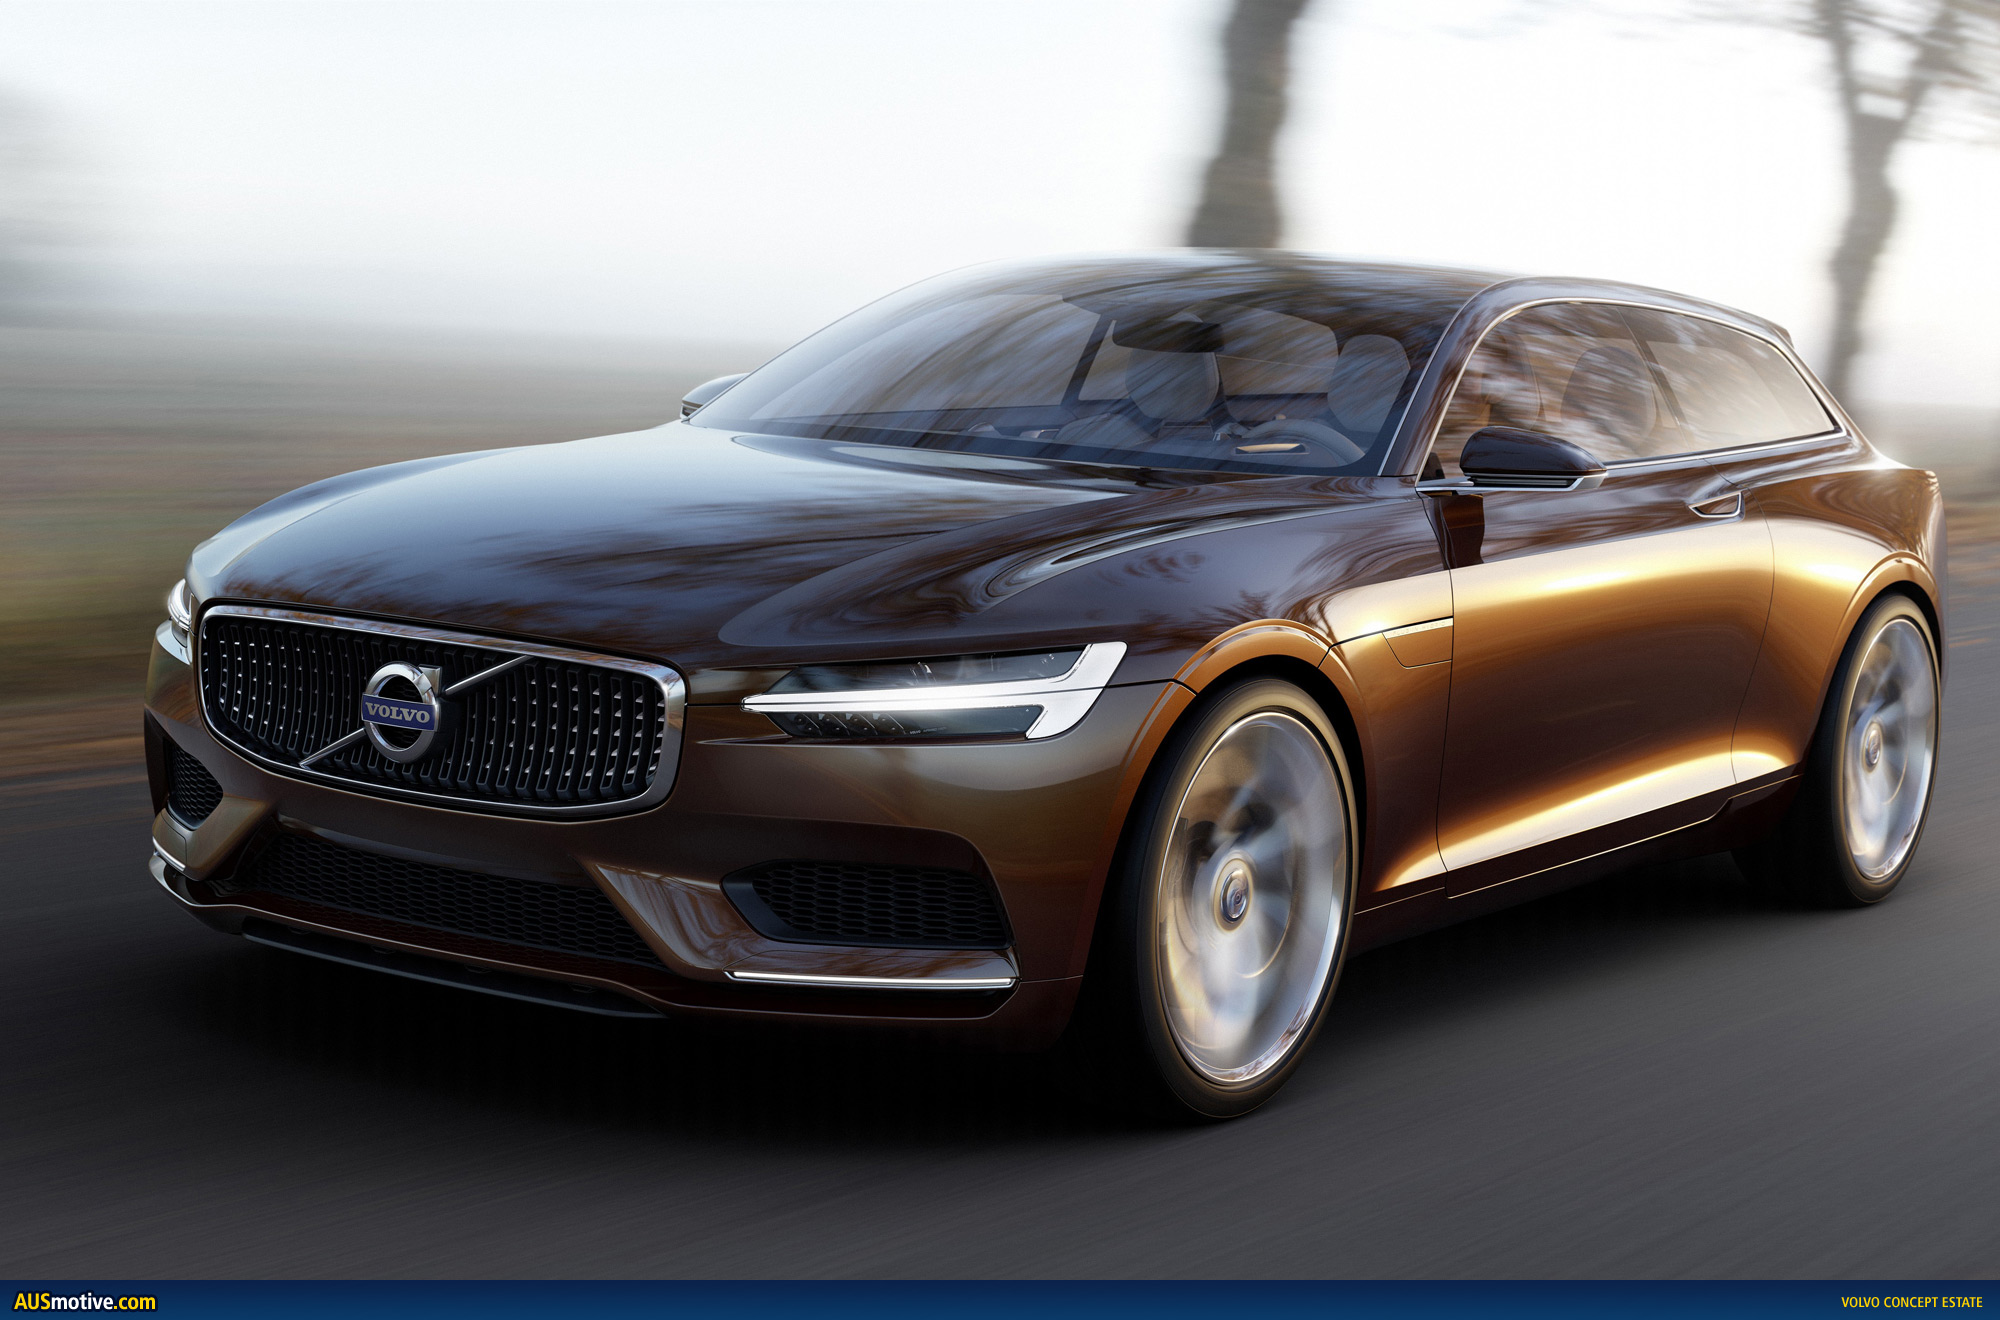 AUSmotive.com » Volvo Concept Estate revealed